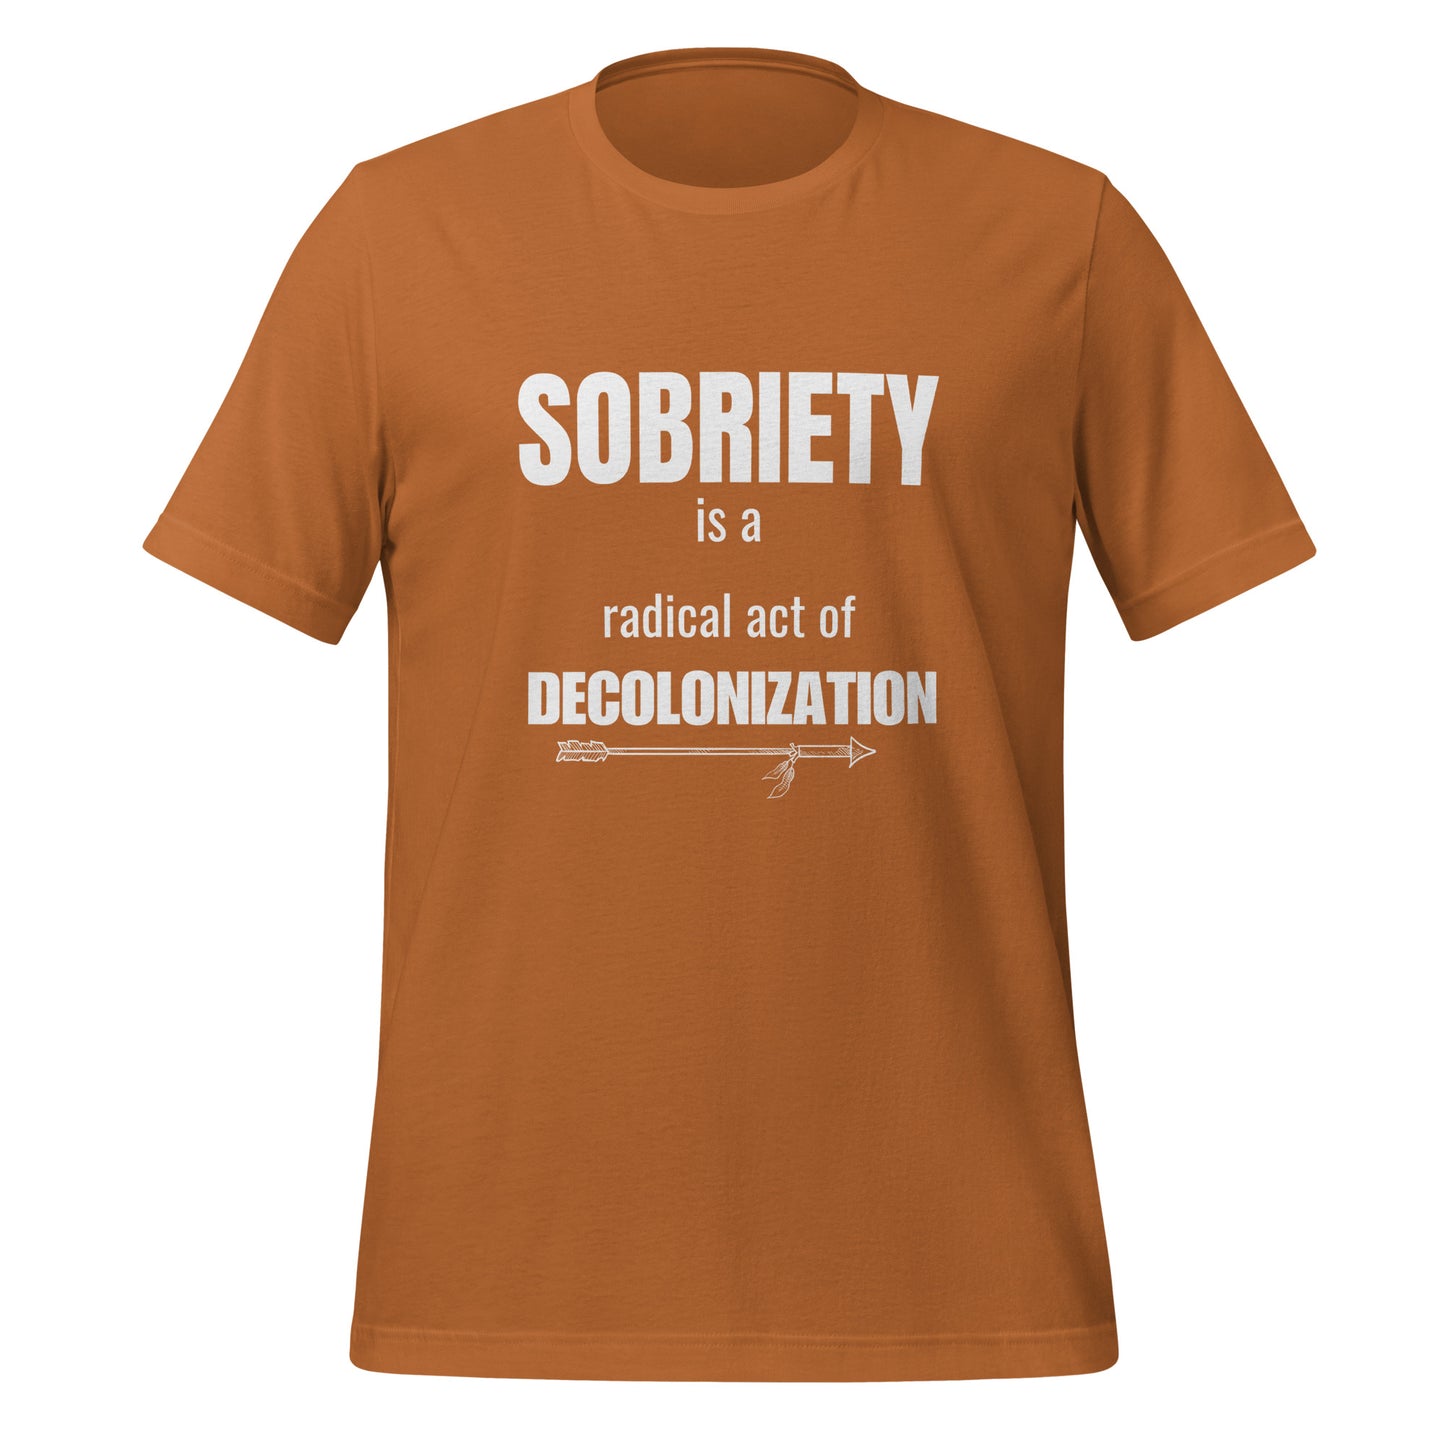 Sobriety is Decolonization Unisex T-shirt